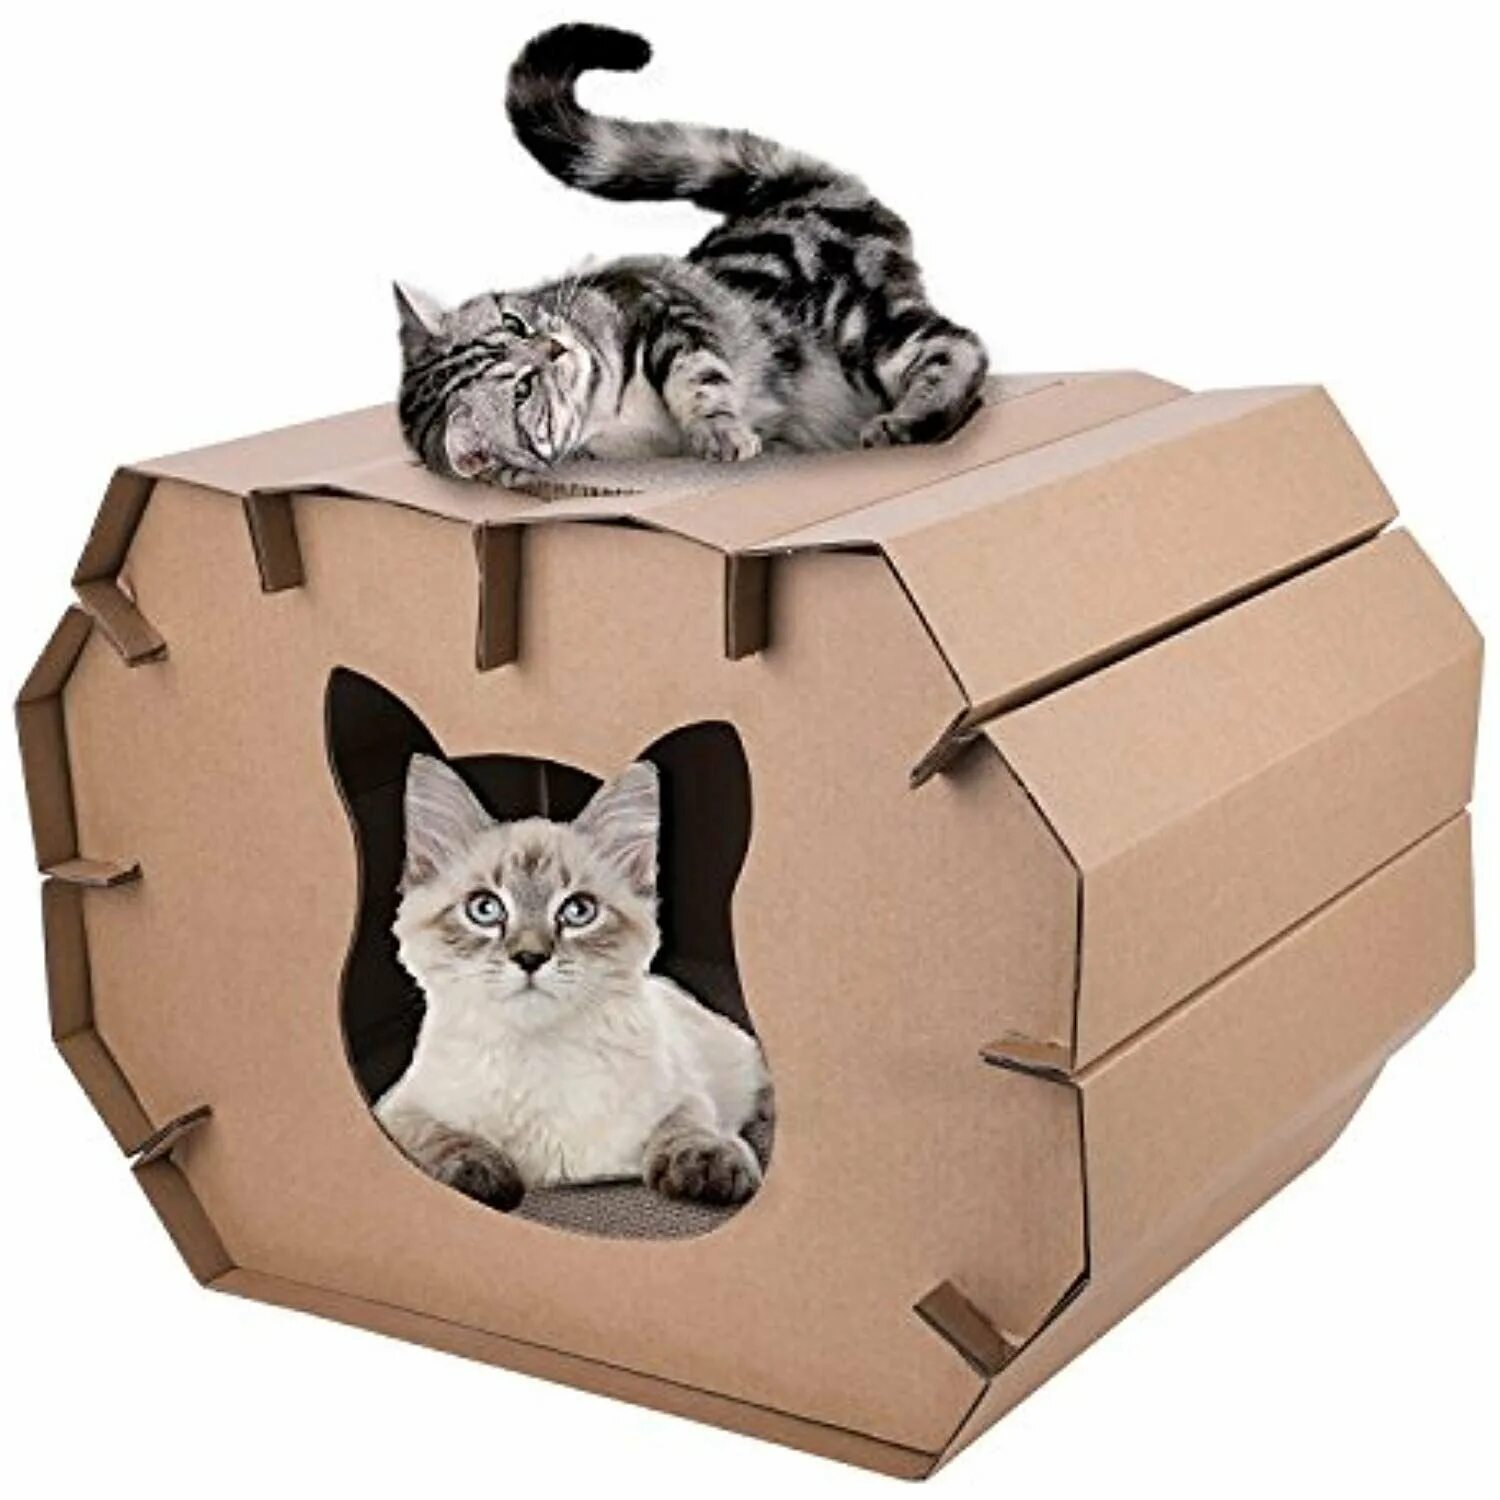 Картон кэт. Картонные игрушки для котов. Игрушка для кота из бумаги. Картонный кот. Домик для бумажной кошки.